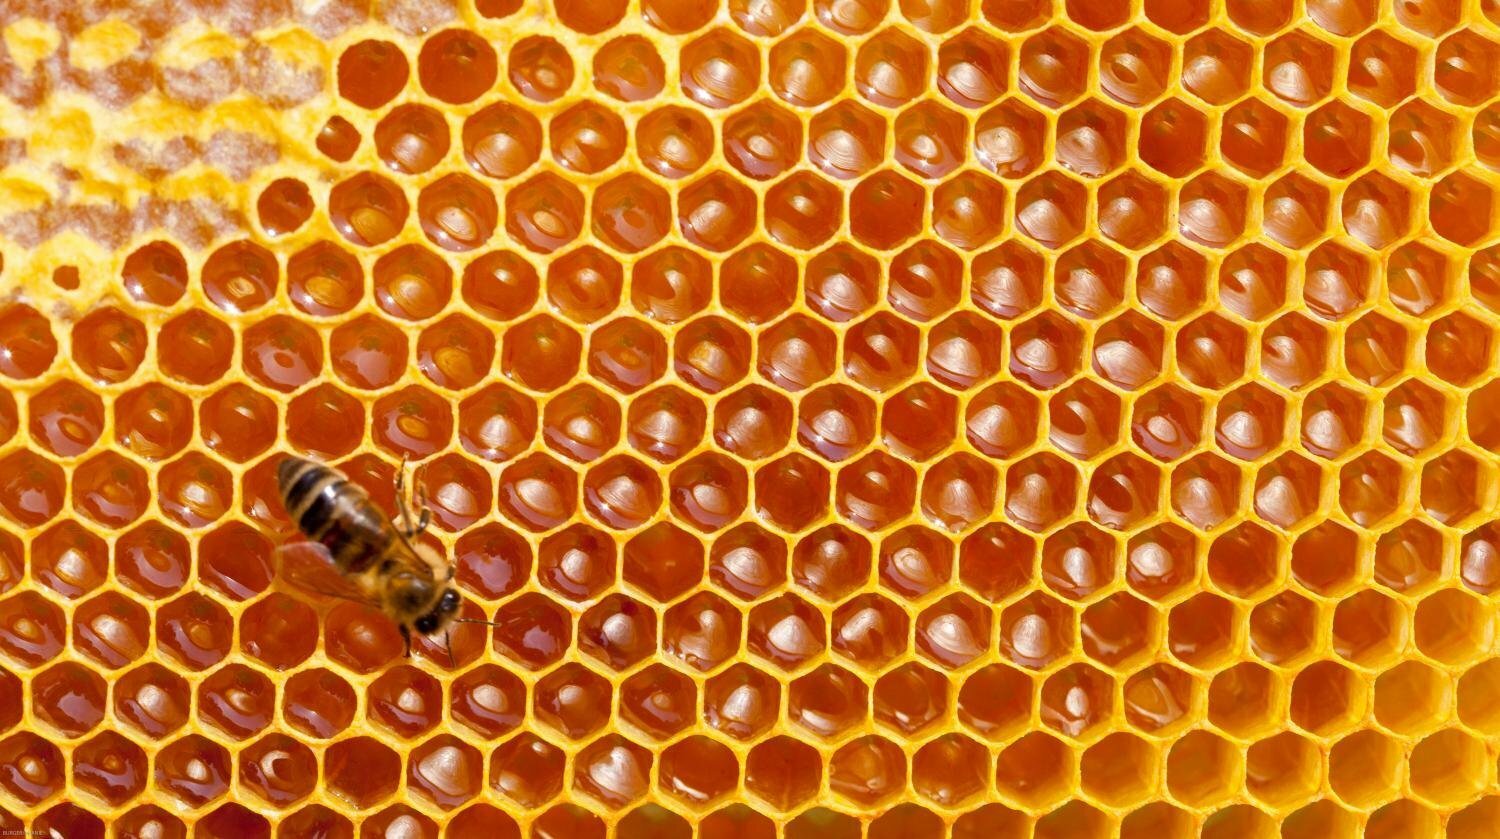 Single Beehive produce 11 kgs of honey a season